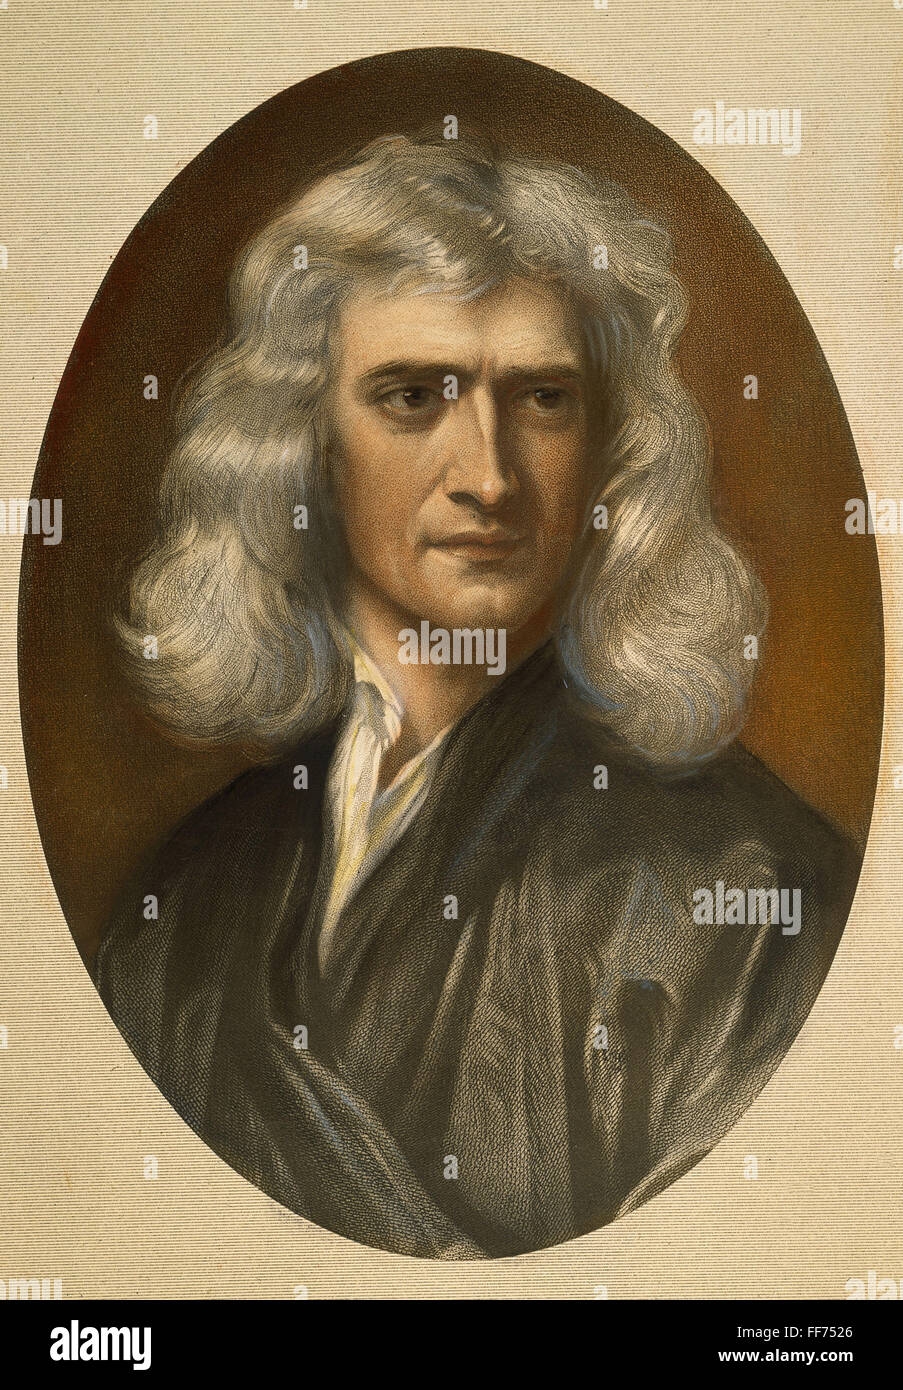 Исааком Ньютоном (1642 – 1726).